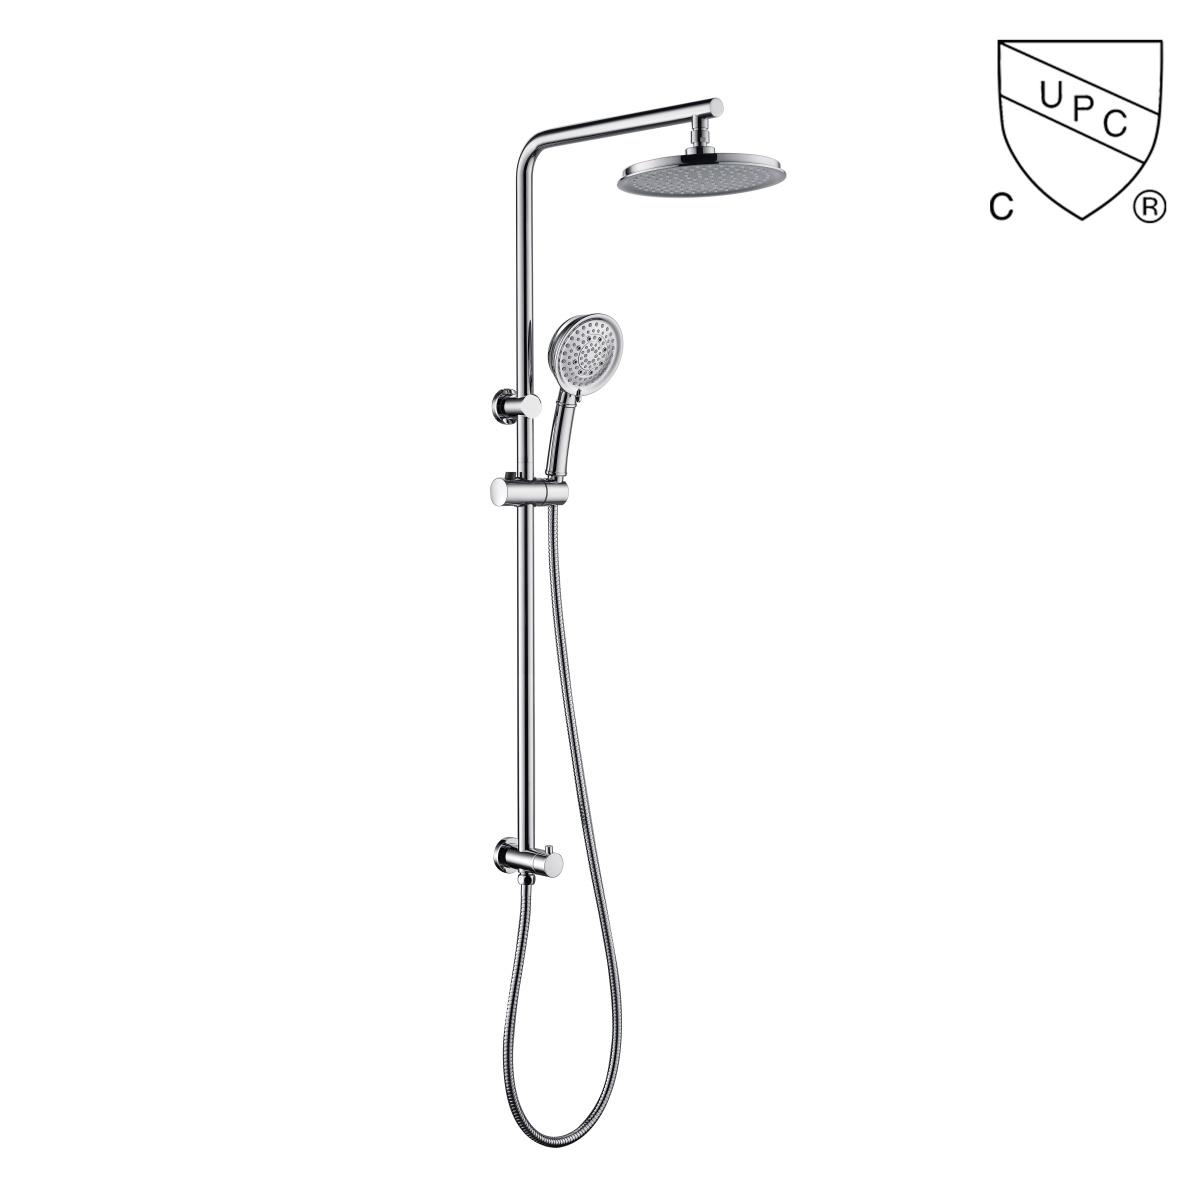 DA310020CP UPC, CUPC minősítésű zuhanykészletek, esőzuhany készlet, tolózuhany készlet;